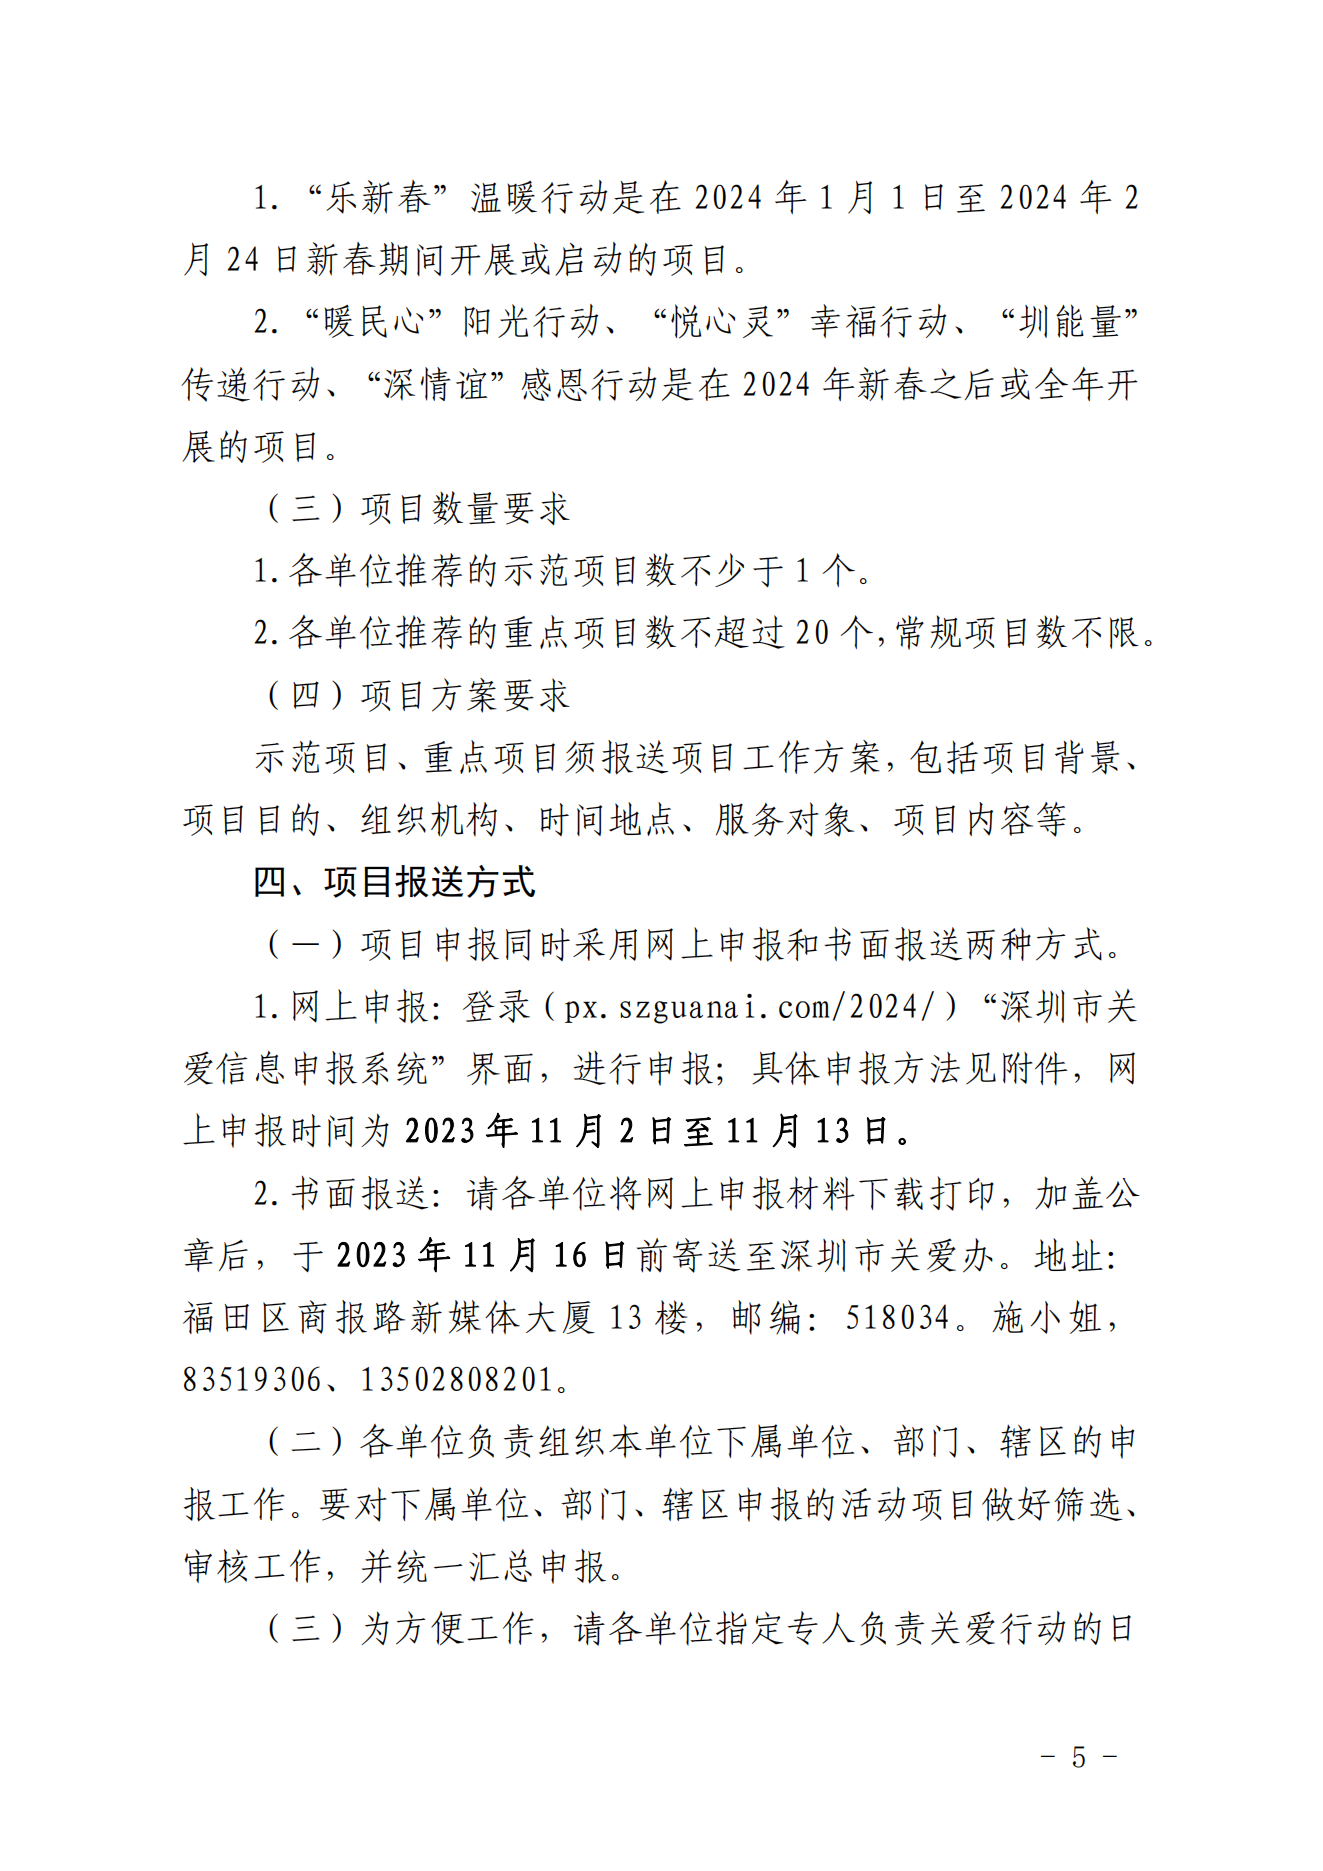 【定稿】关于做好第二十一届深圳关爱行动组织策划和项目申报工作的通知_04.png